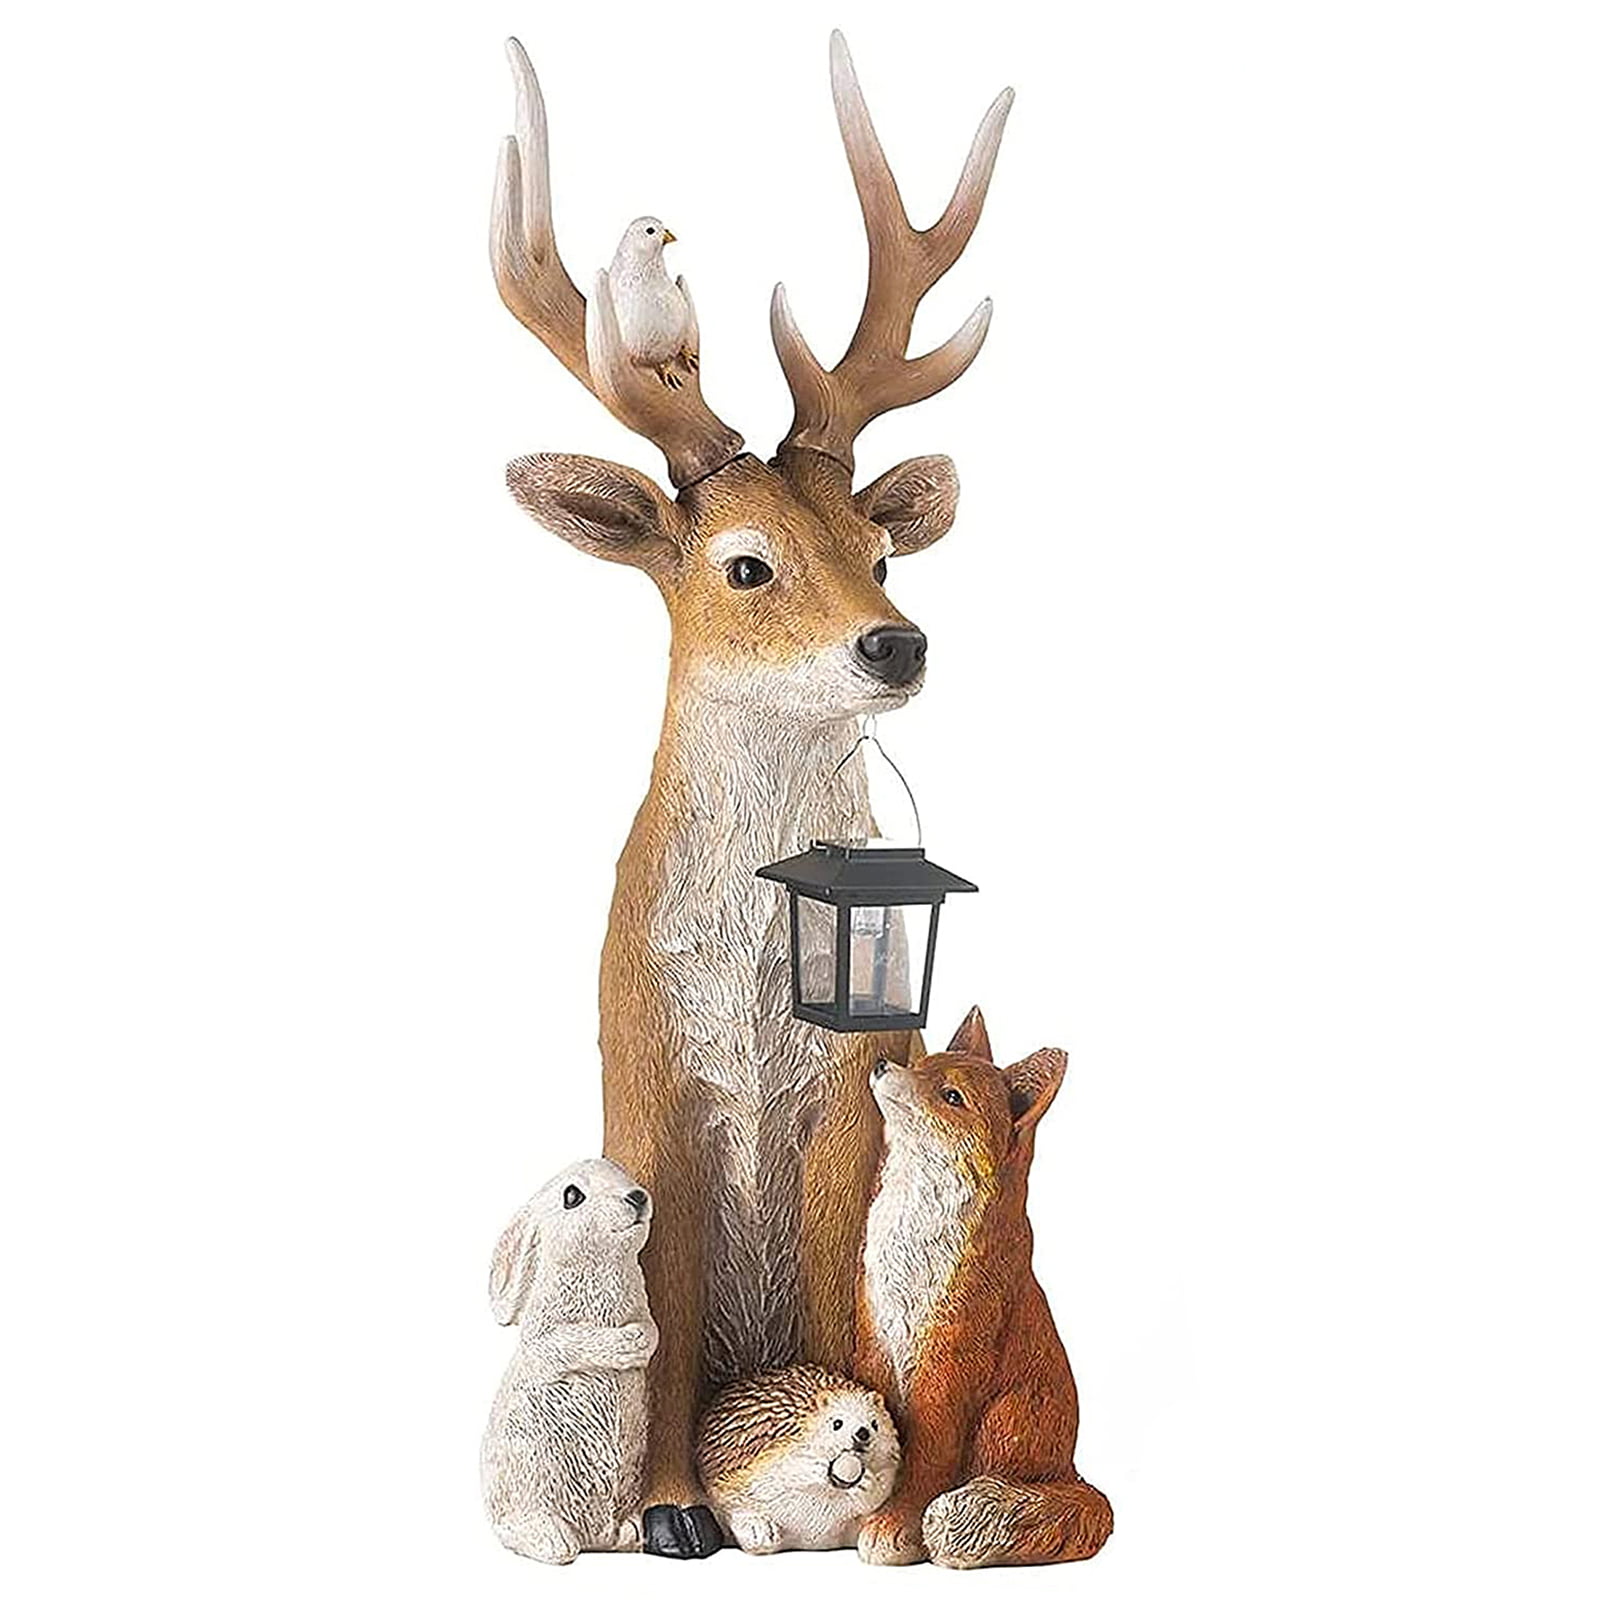 Young's Resin Deer 2 Piece Figurine Set 5